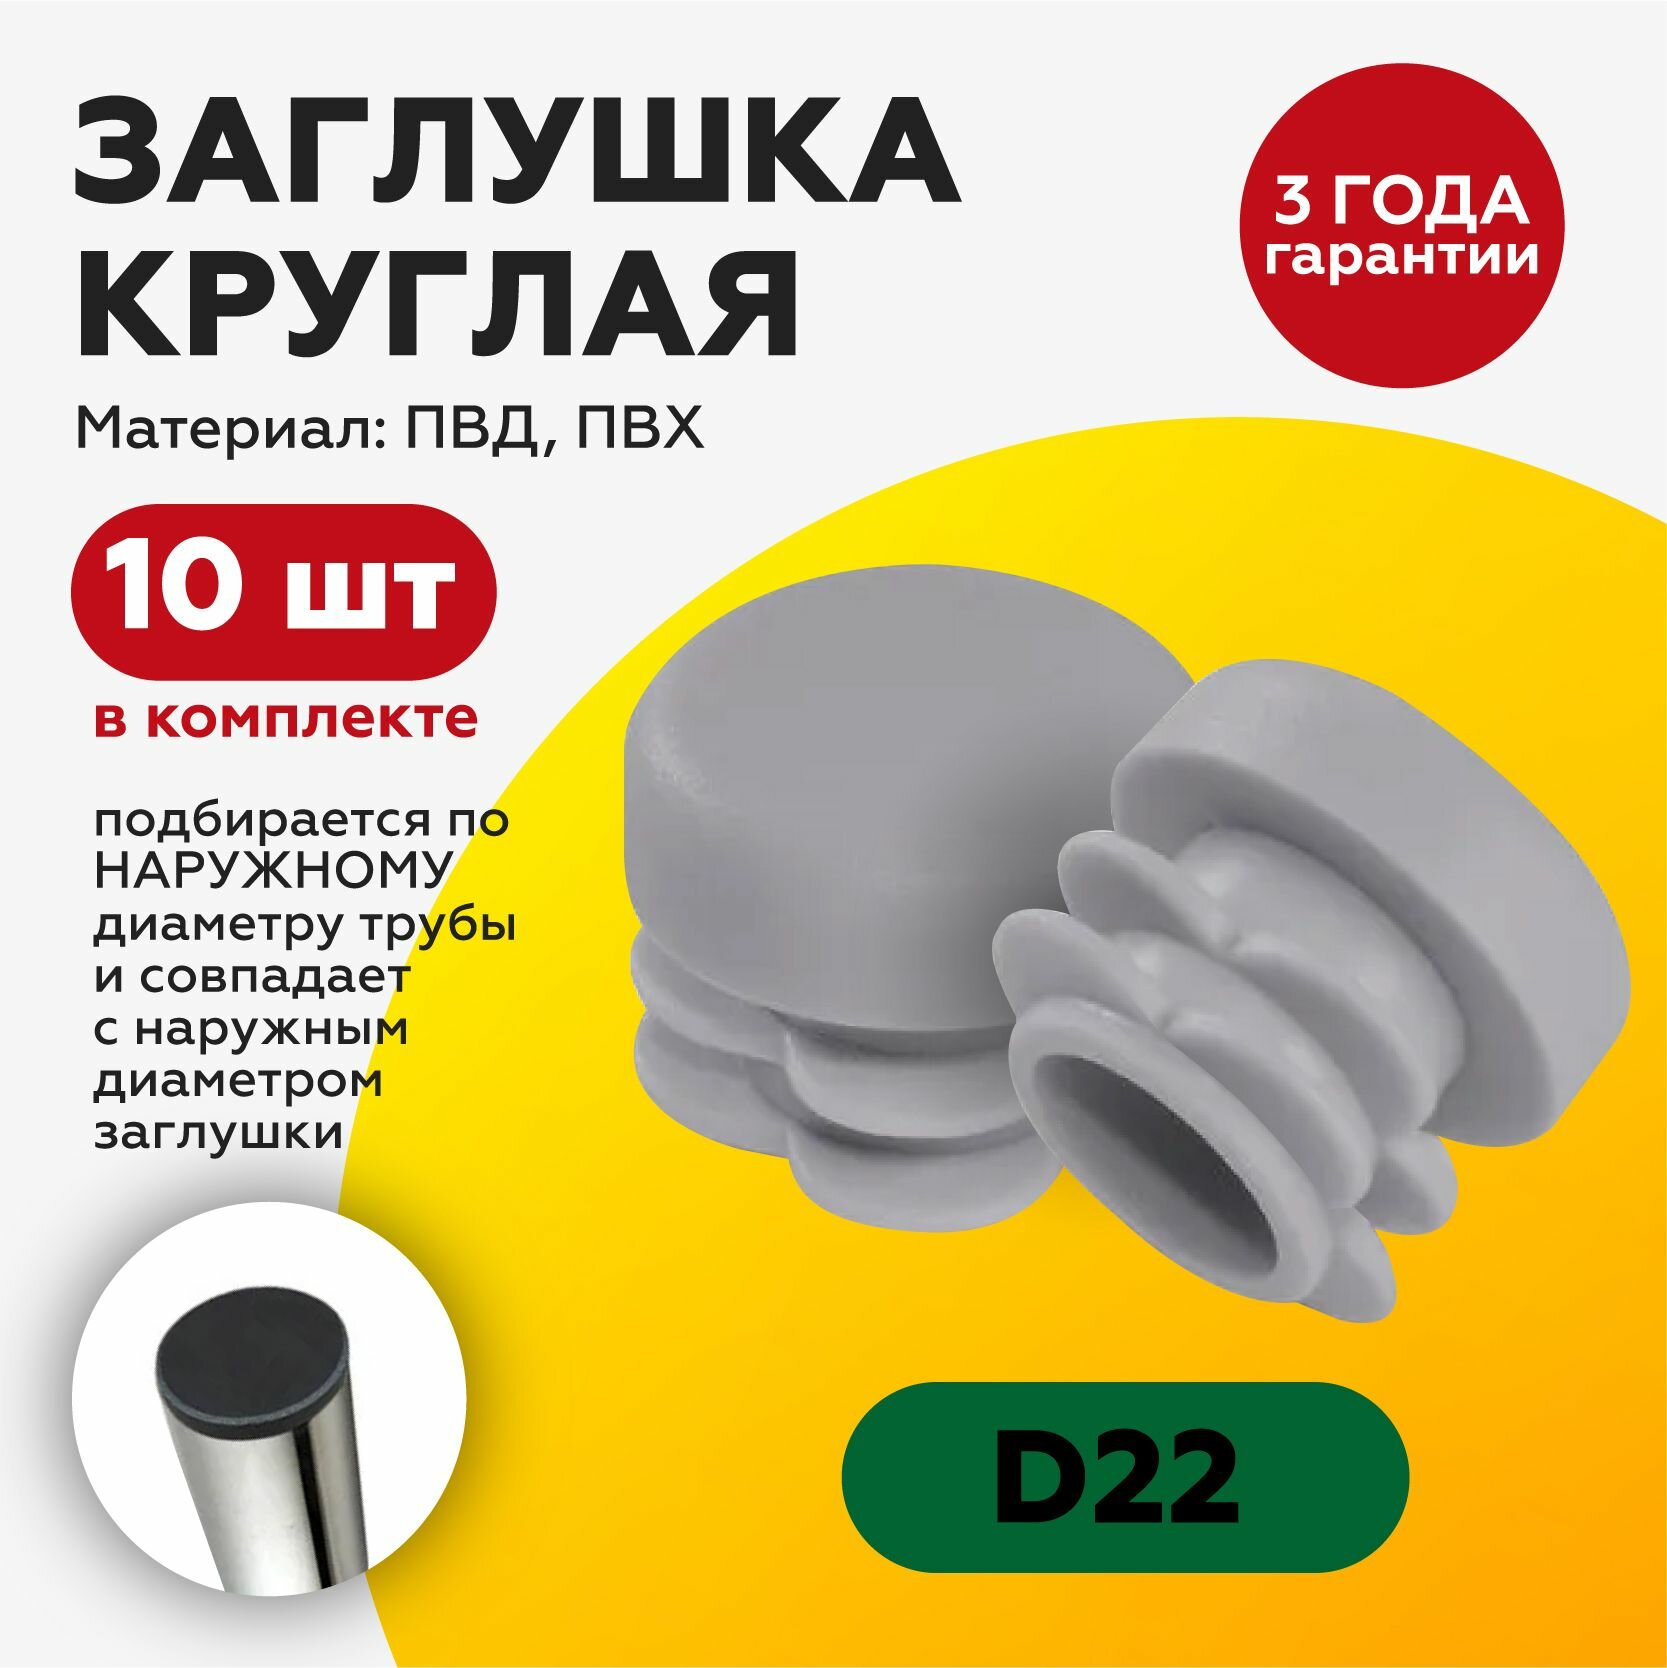 Заглушка круглая D 22 мм (10 шт) для профильной трубы заглушки на ножку стула мебельная ножка опора  серая